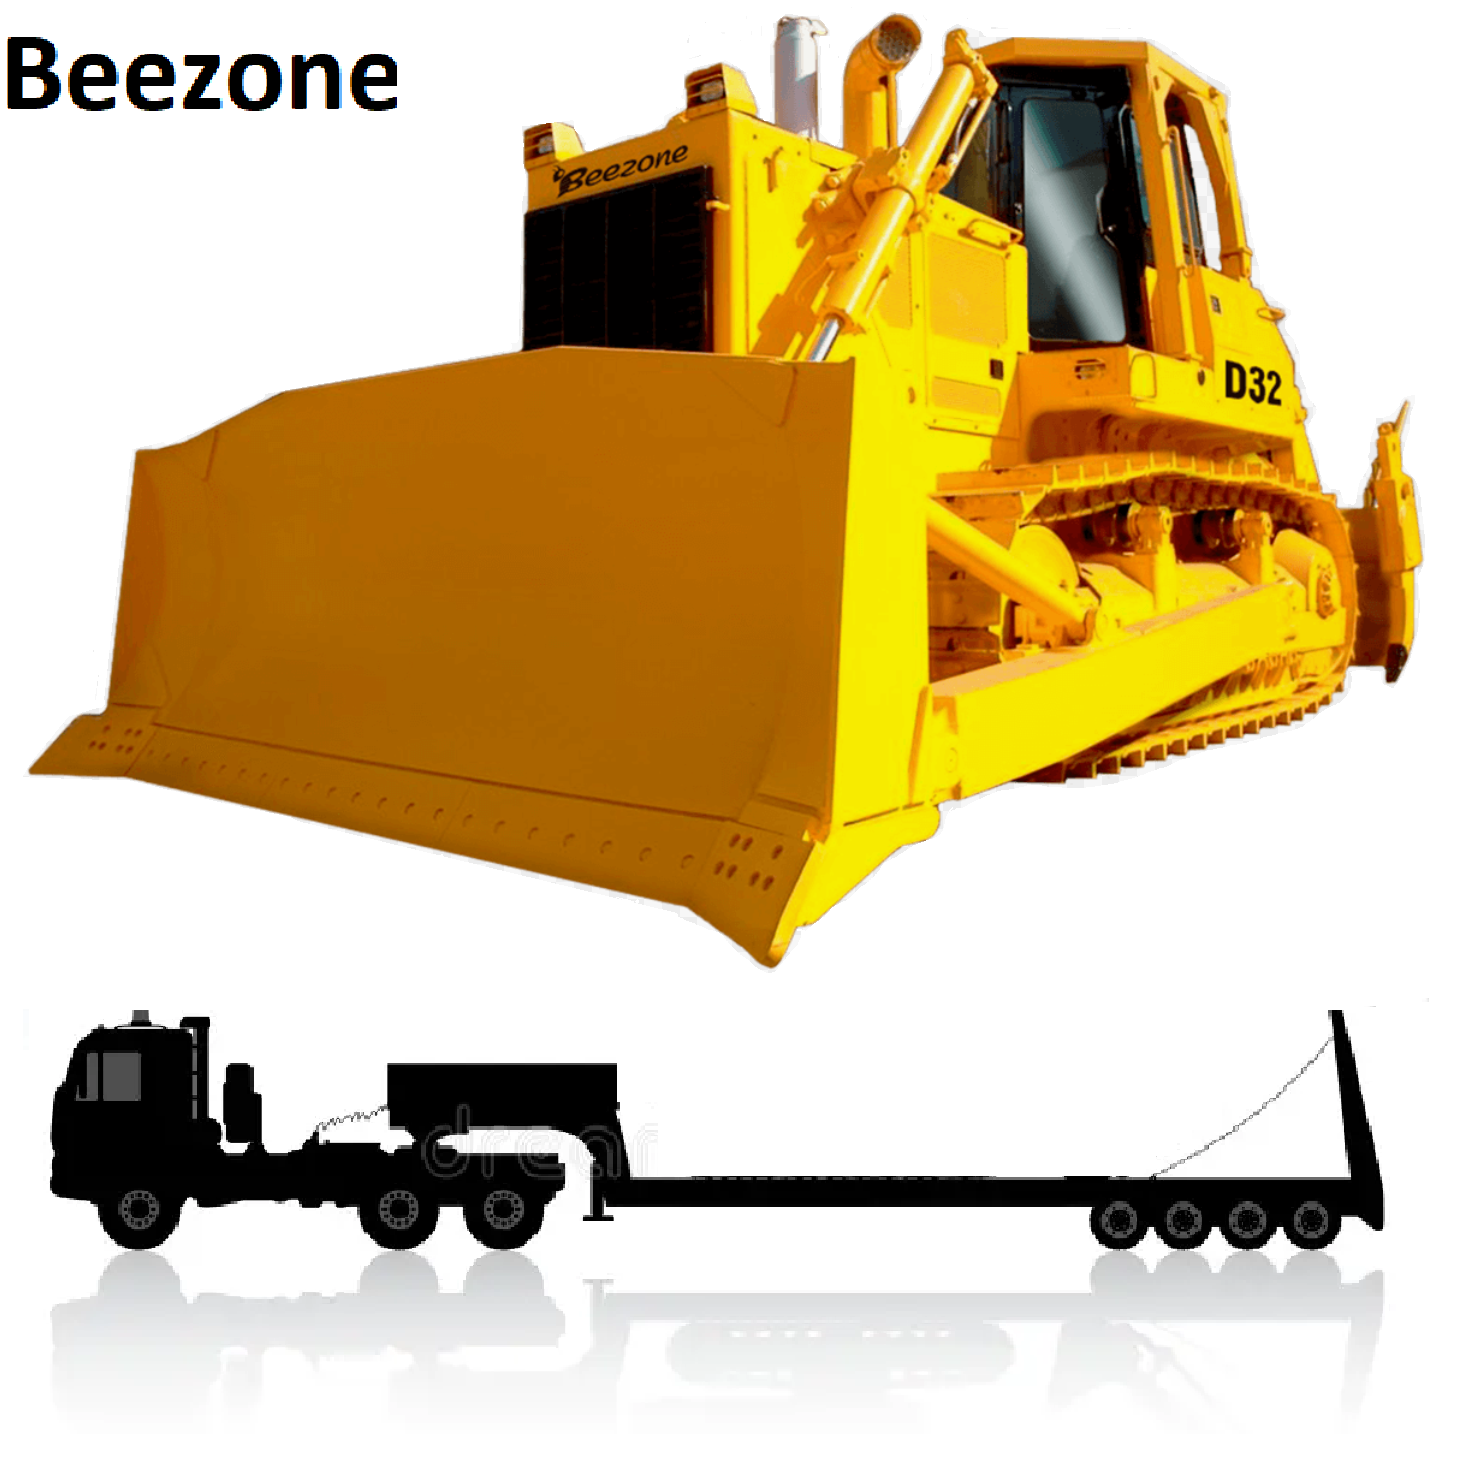 Перевозка бульдозера Beezone. перевозка 45 тонн, перевозка негабаритных грузов,  перевозка негабаритных грузов автотранспортом, разрешение на перевозку негабаритных грузов, автомобильные перевозки негабаритных грузов, для перевозки негабаритных грузов